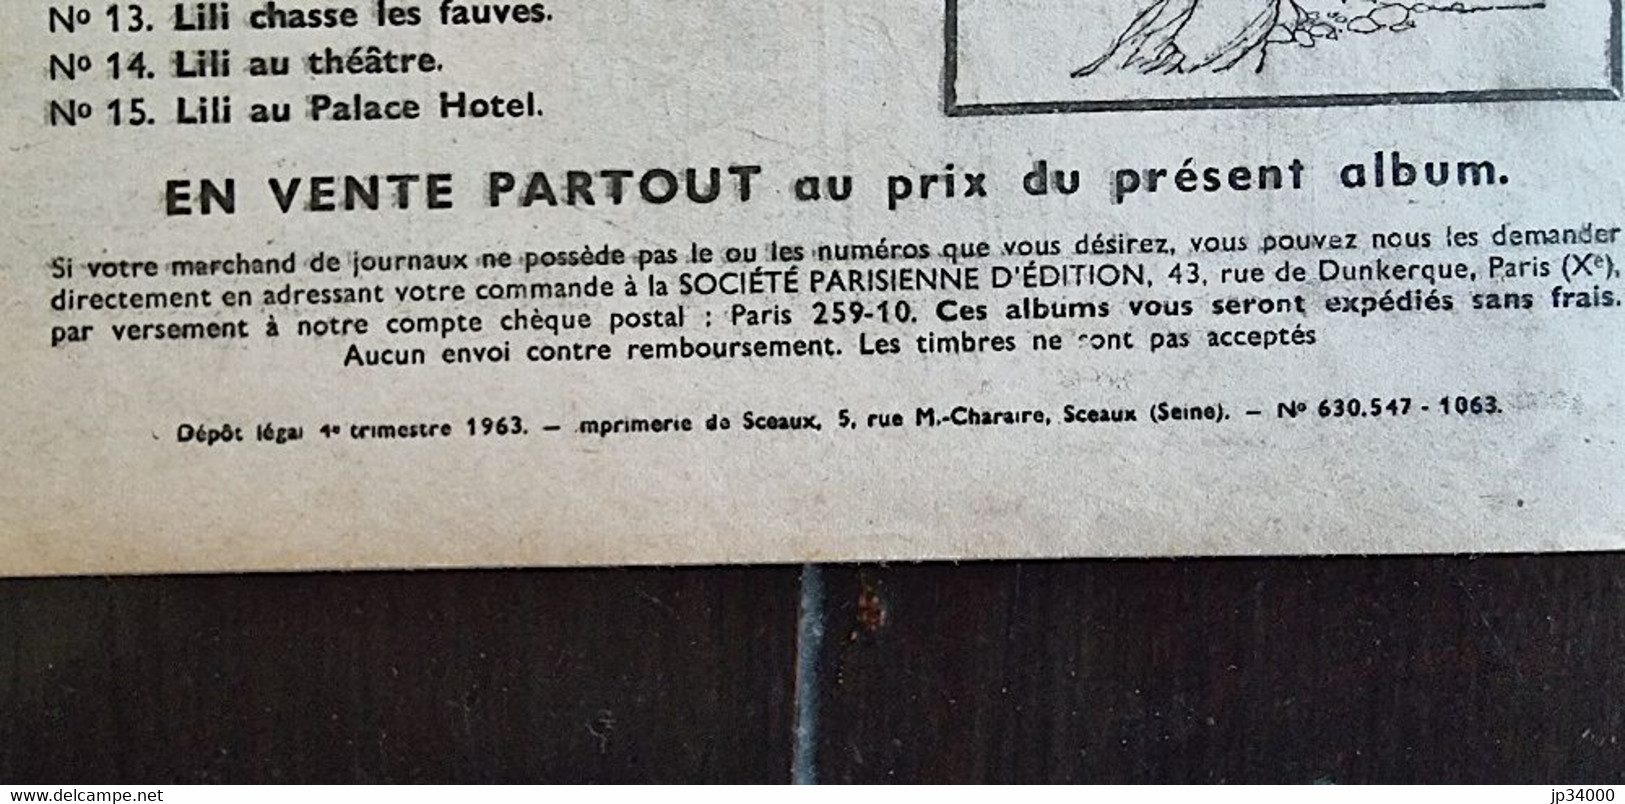 AGGIE Reine Du Rodéo N°6 - EDITION 1963. Couverture Papier. Bel état - Aggie